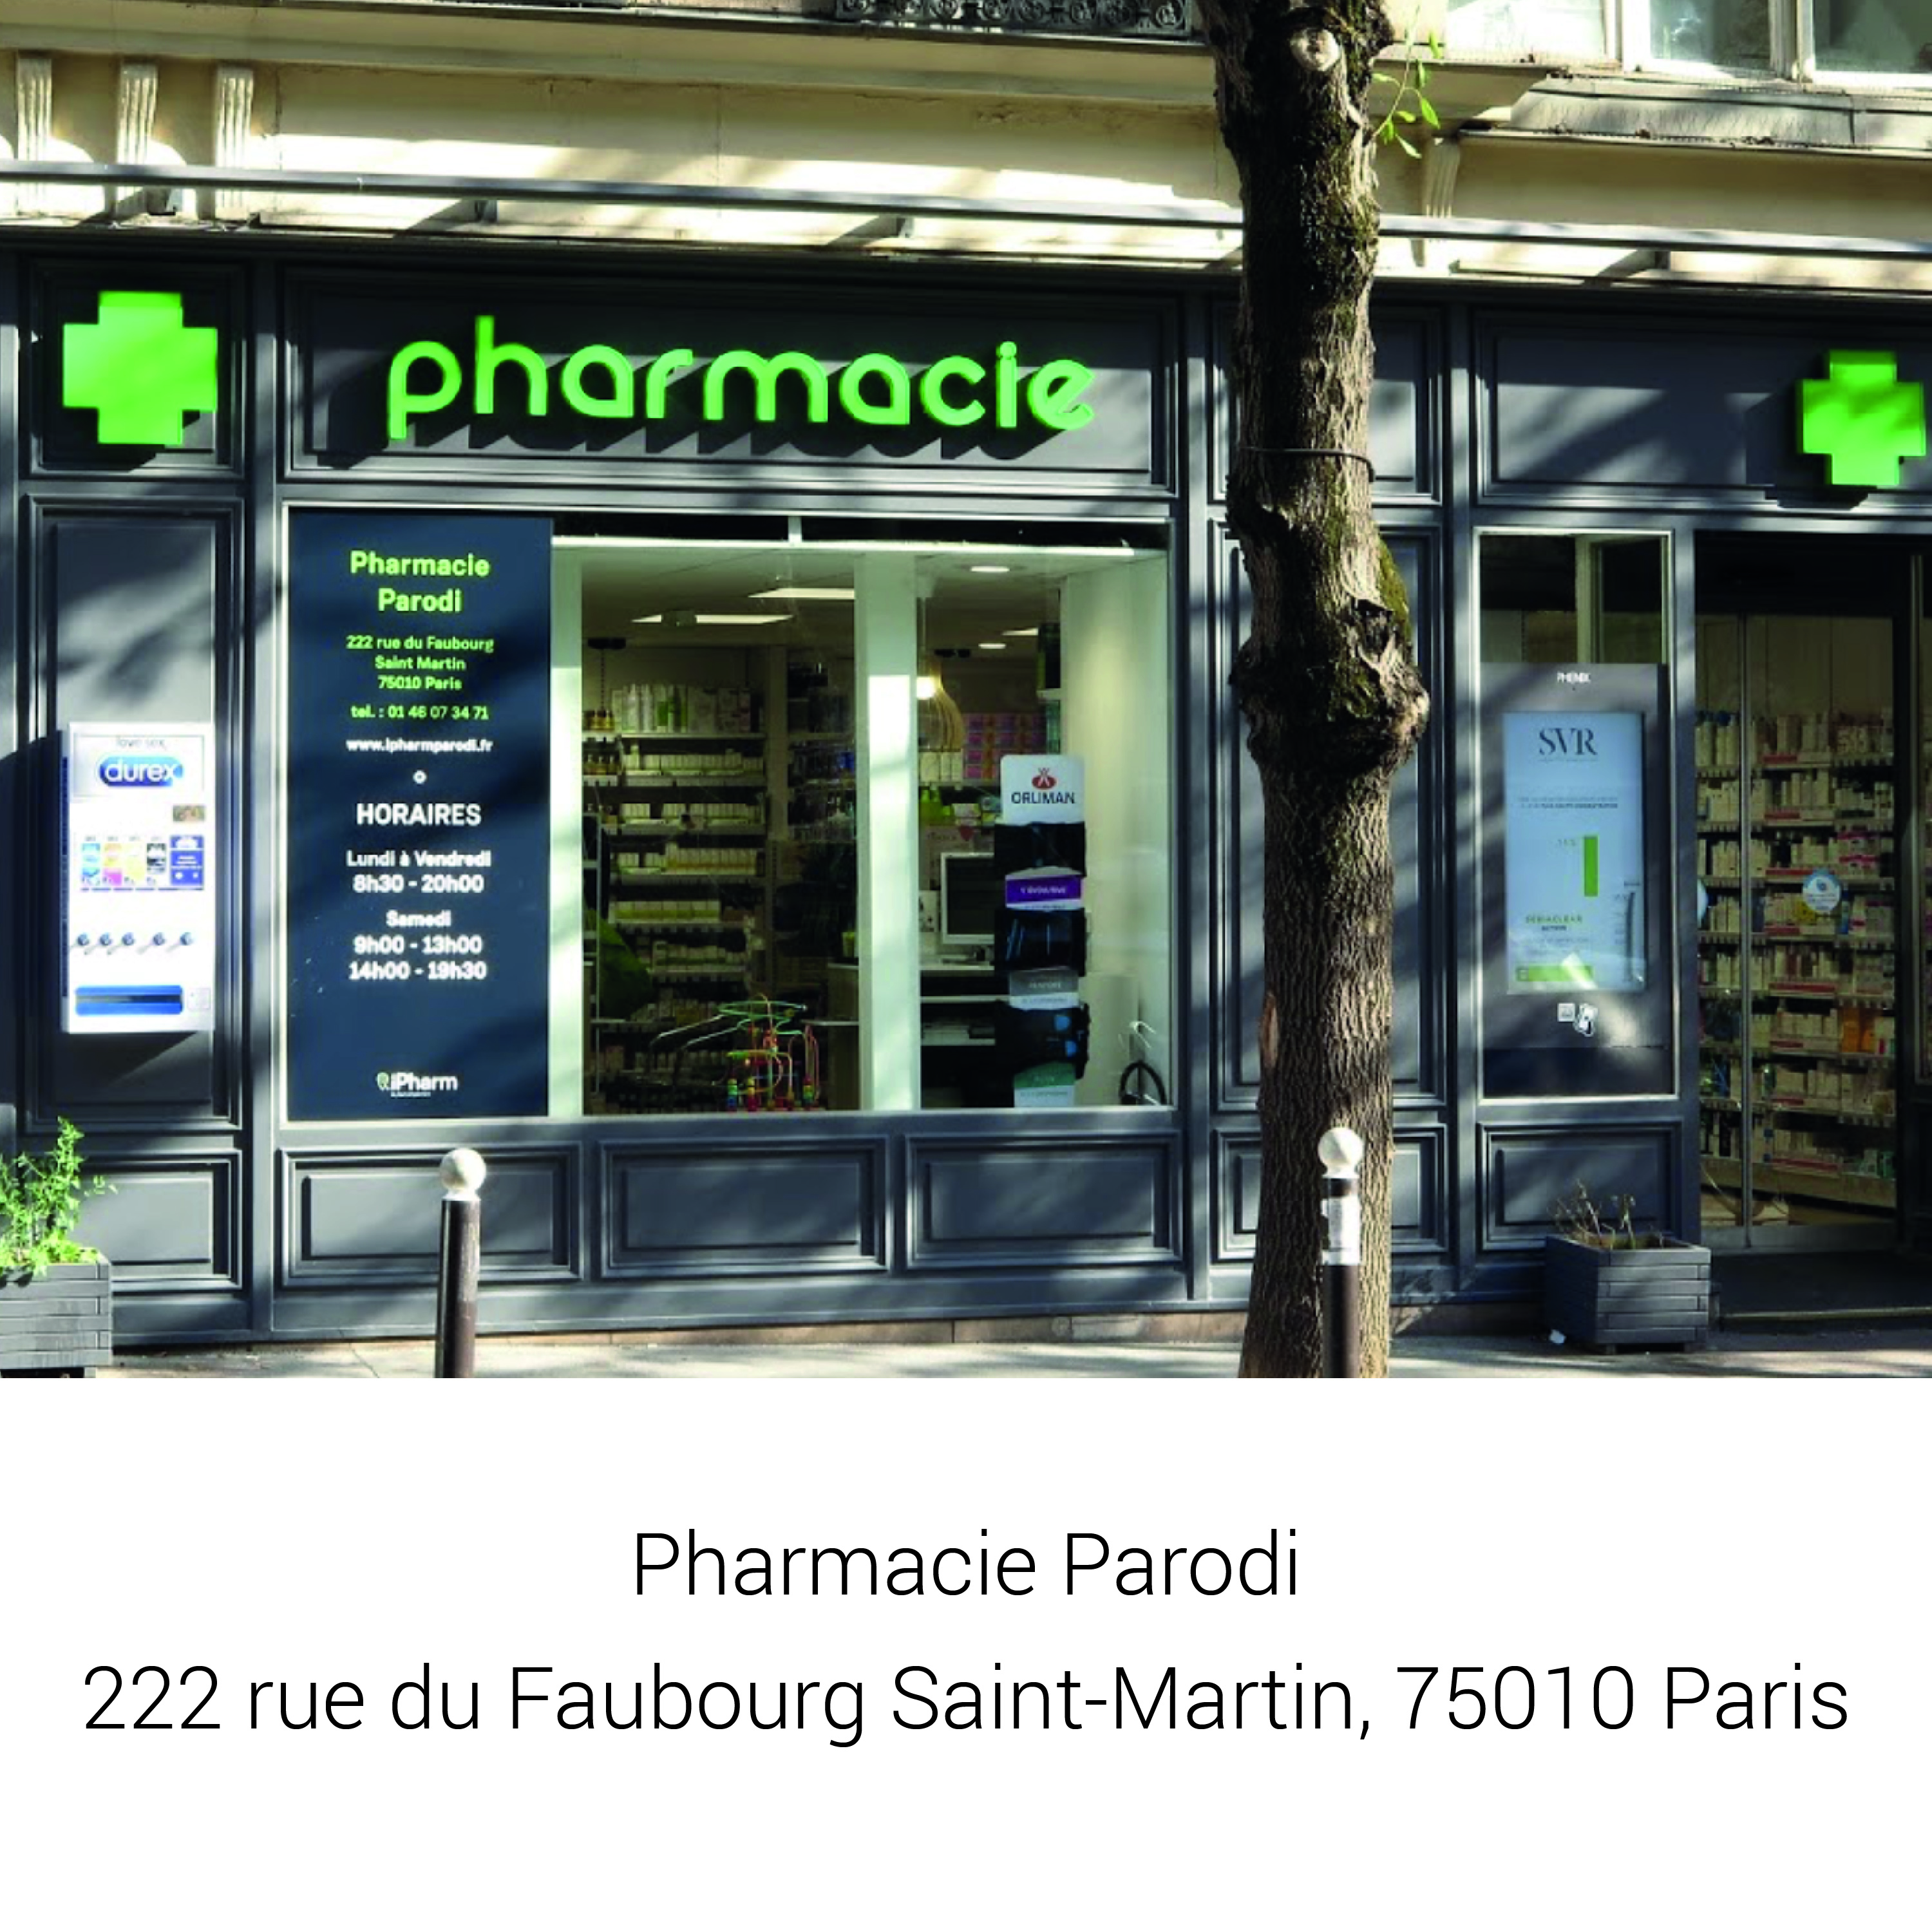 Pharmacie Parodi